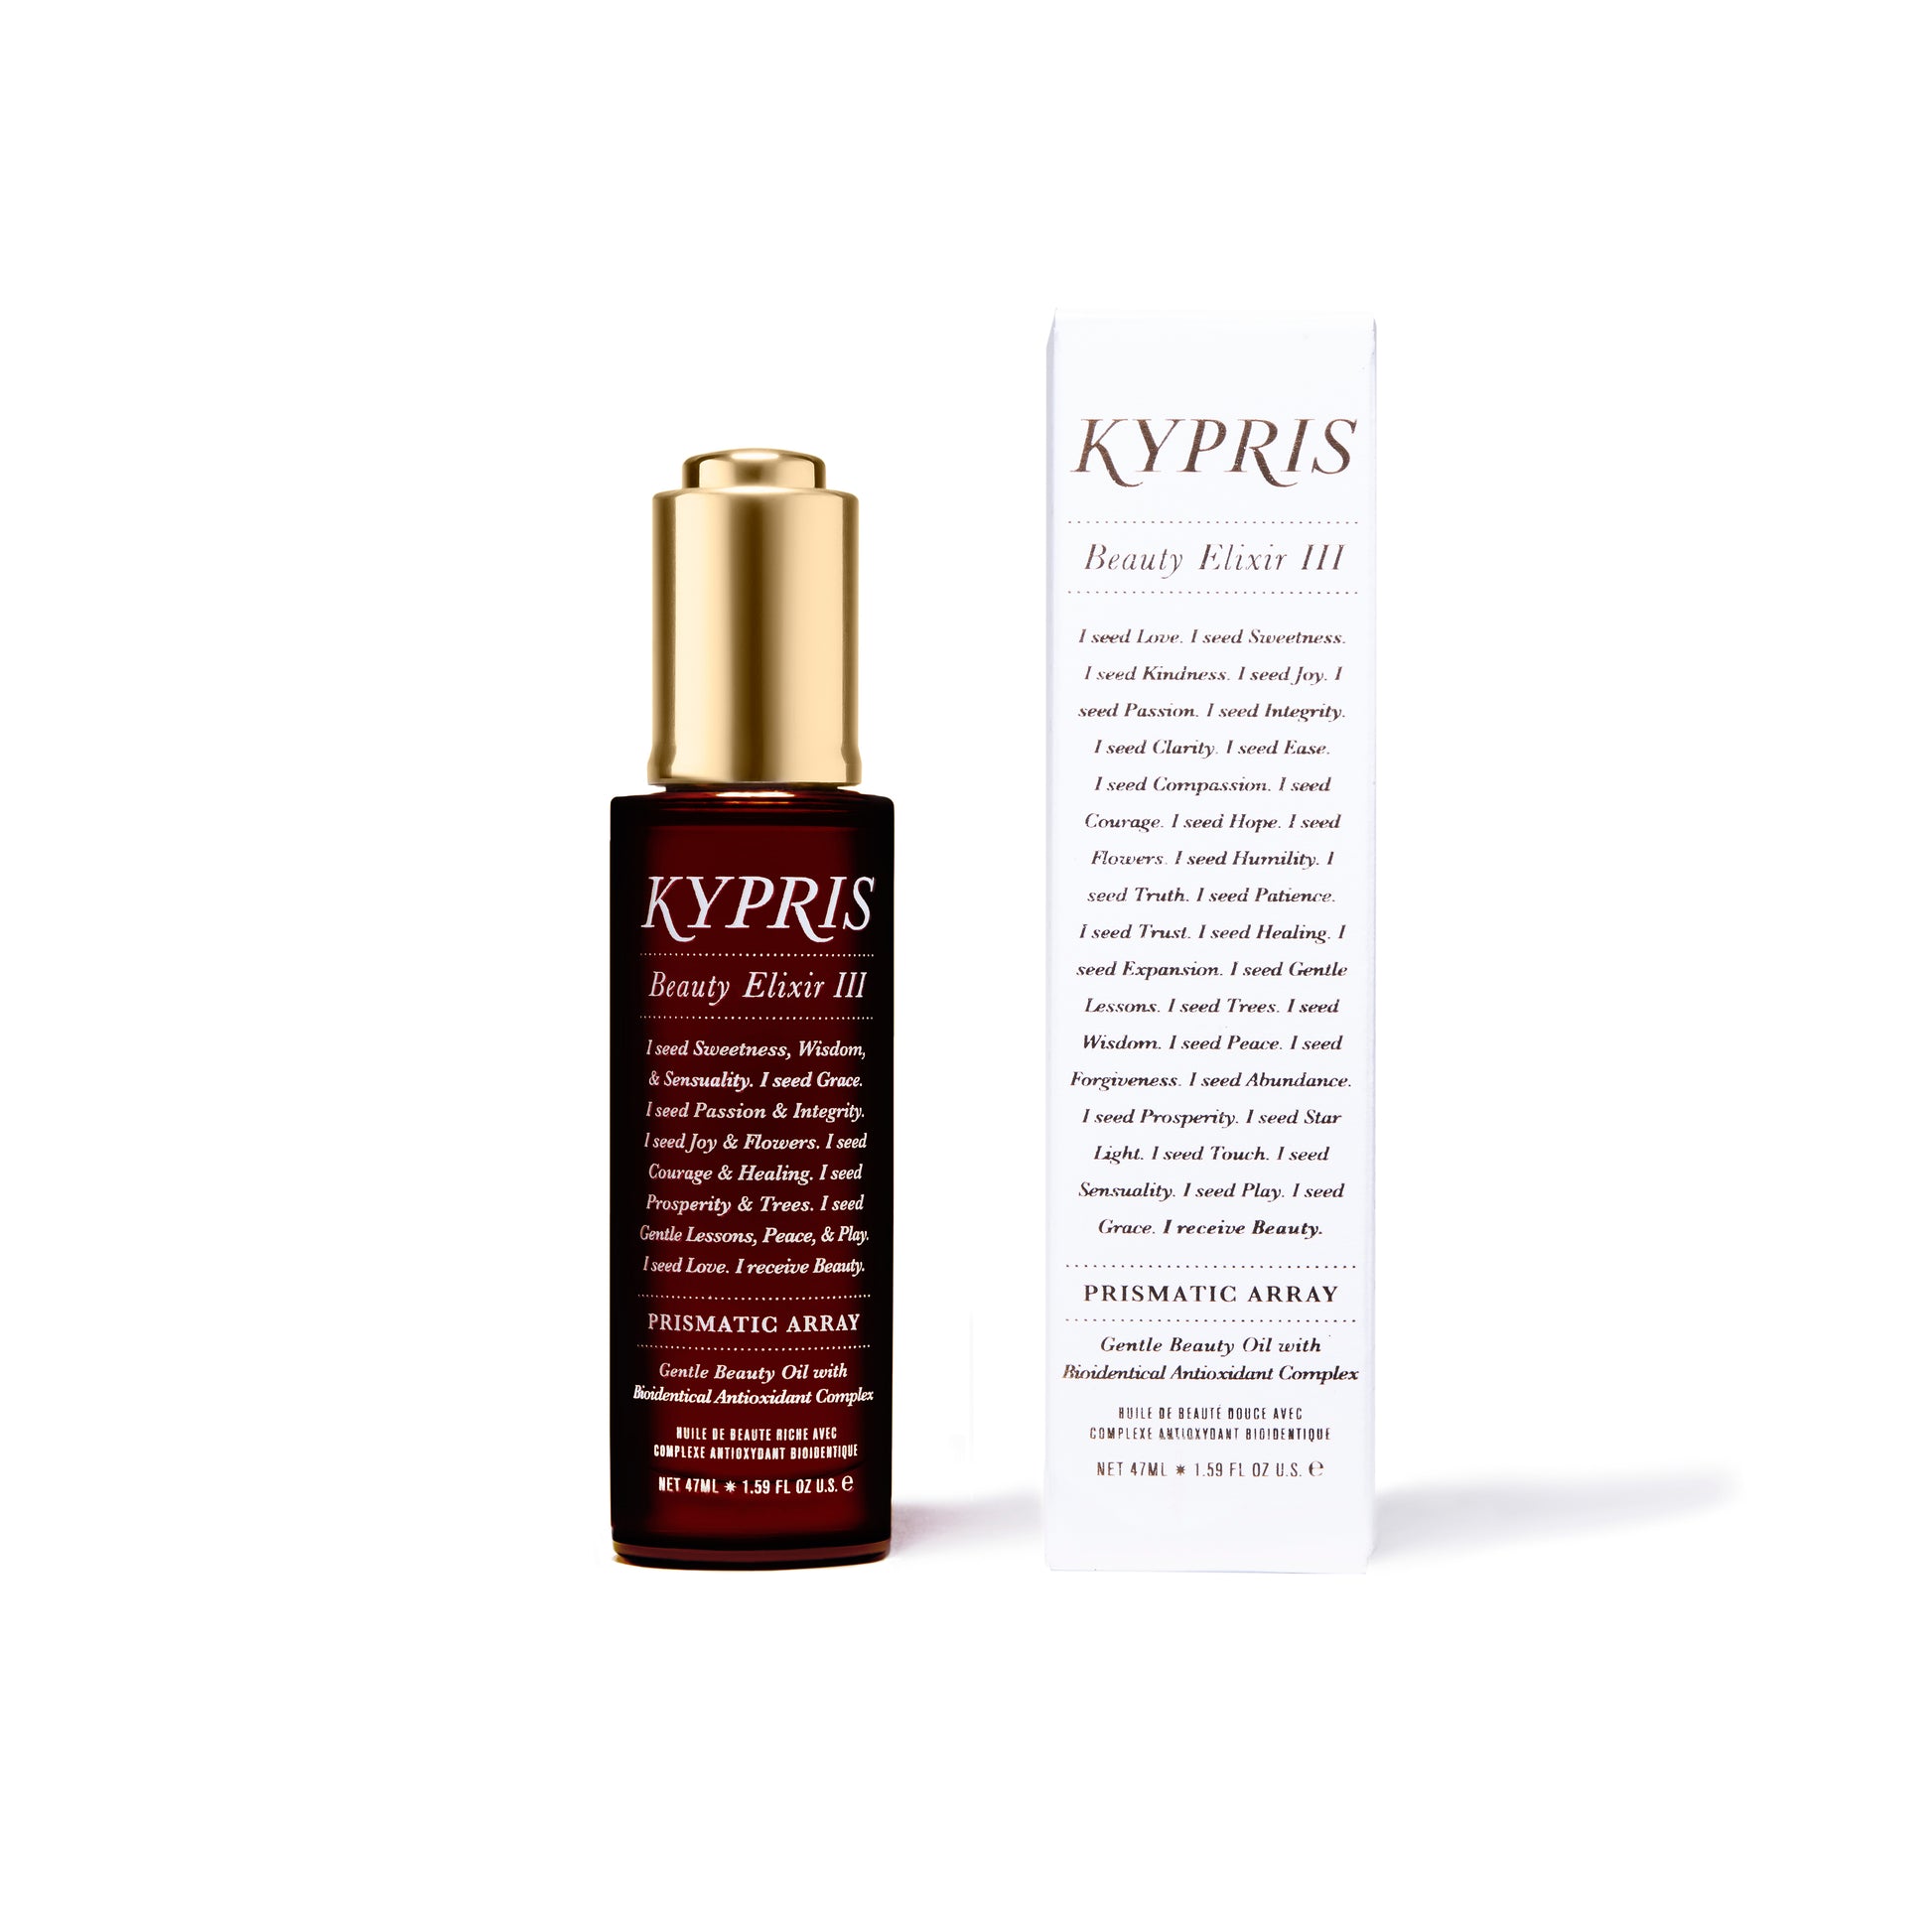 KYPRIS Beauty Elixir III Prismatic Array full size